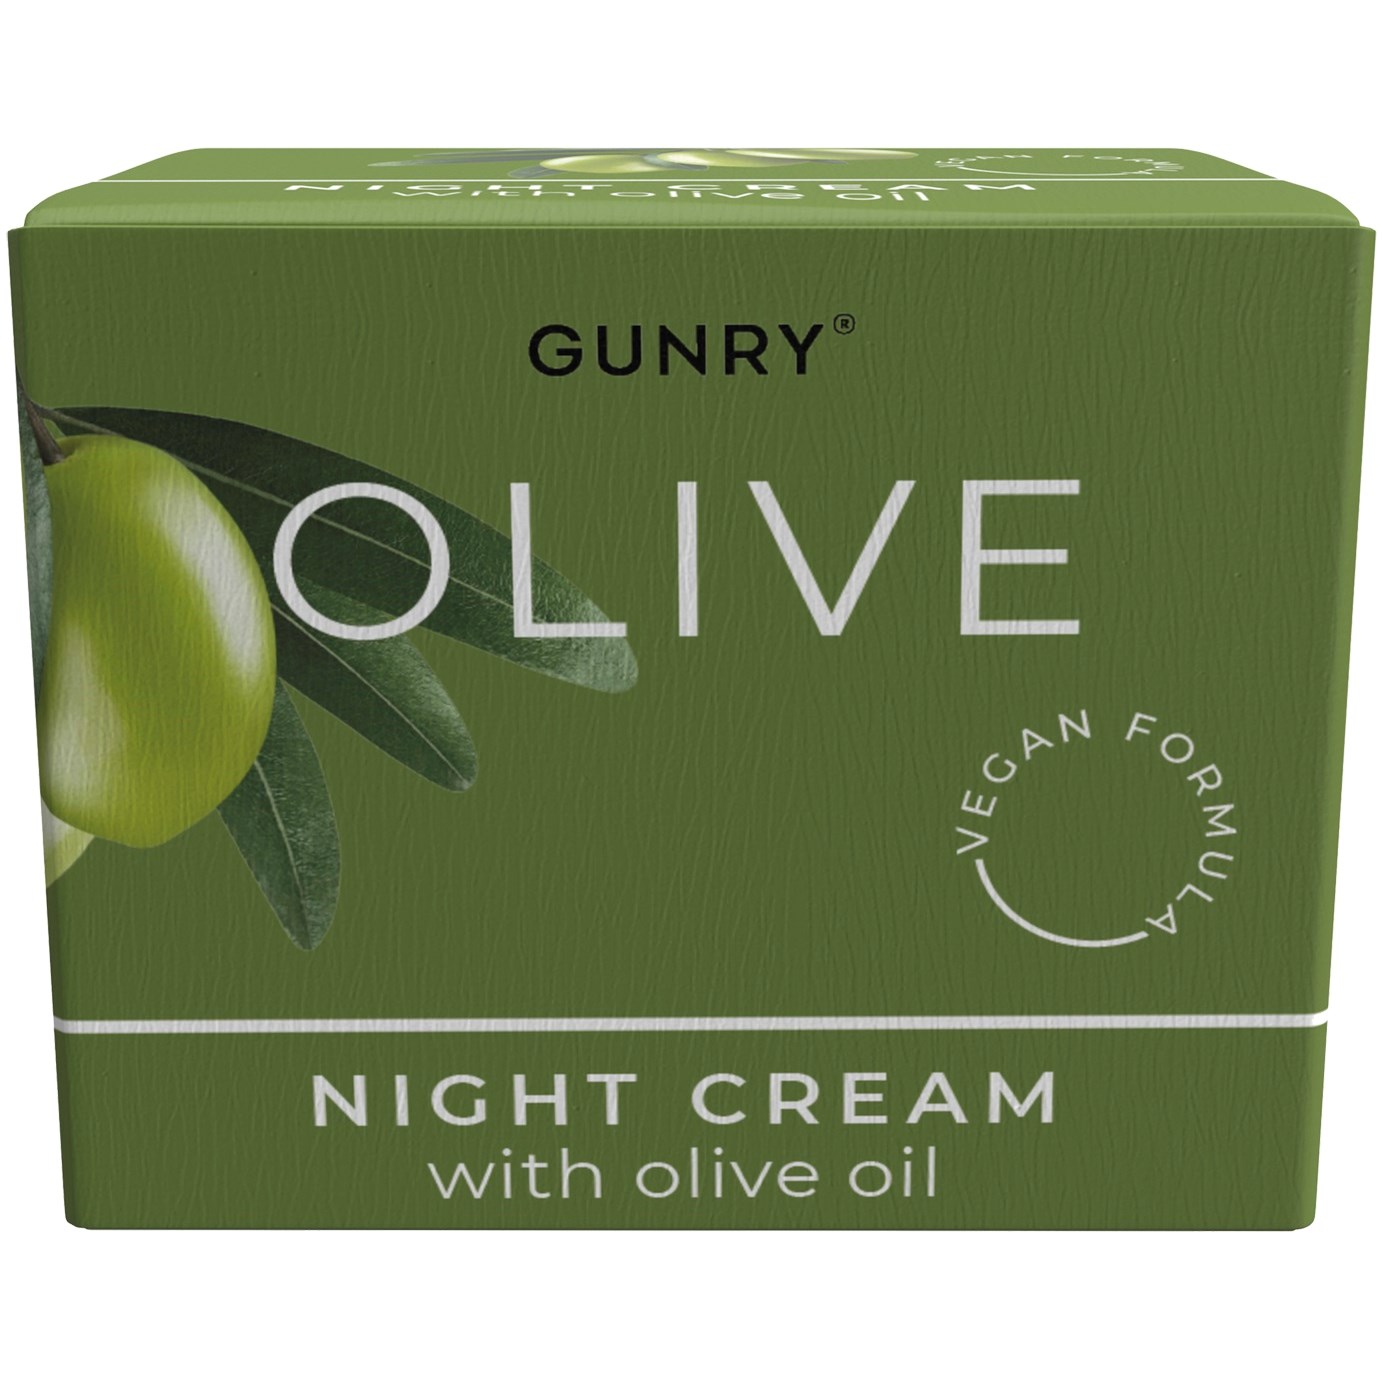 Gunry Olive Night Cream 50 ml